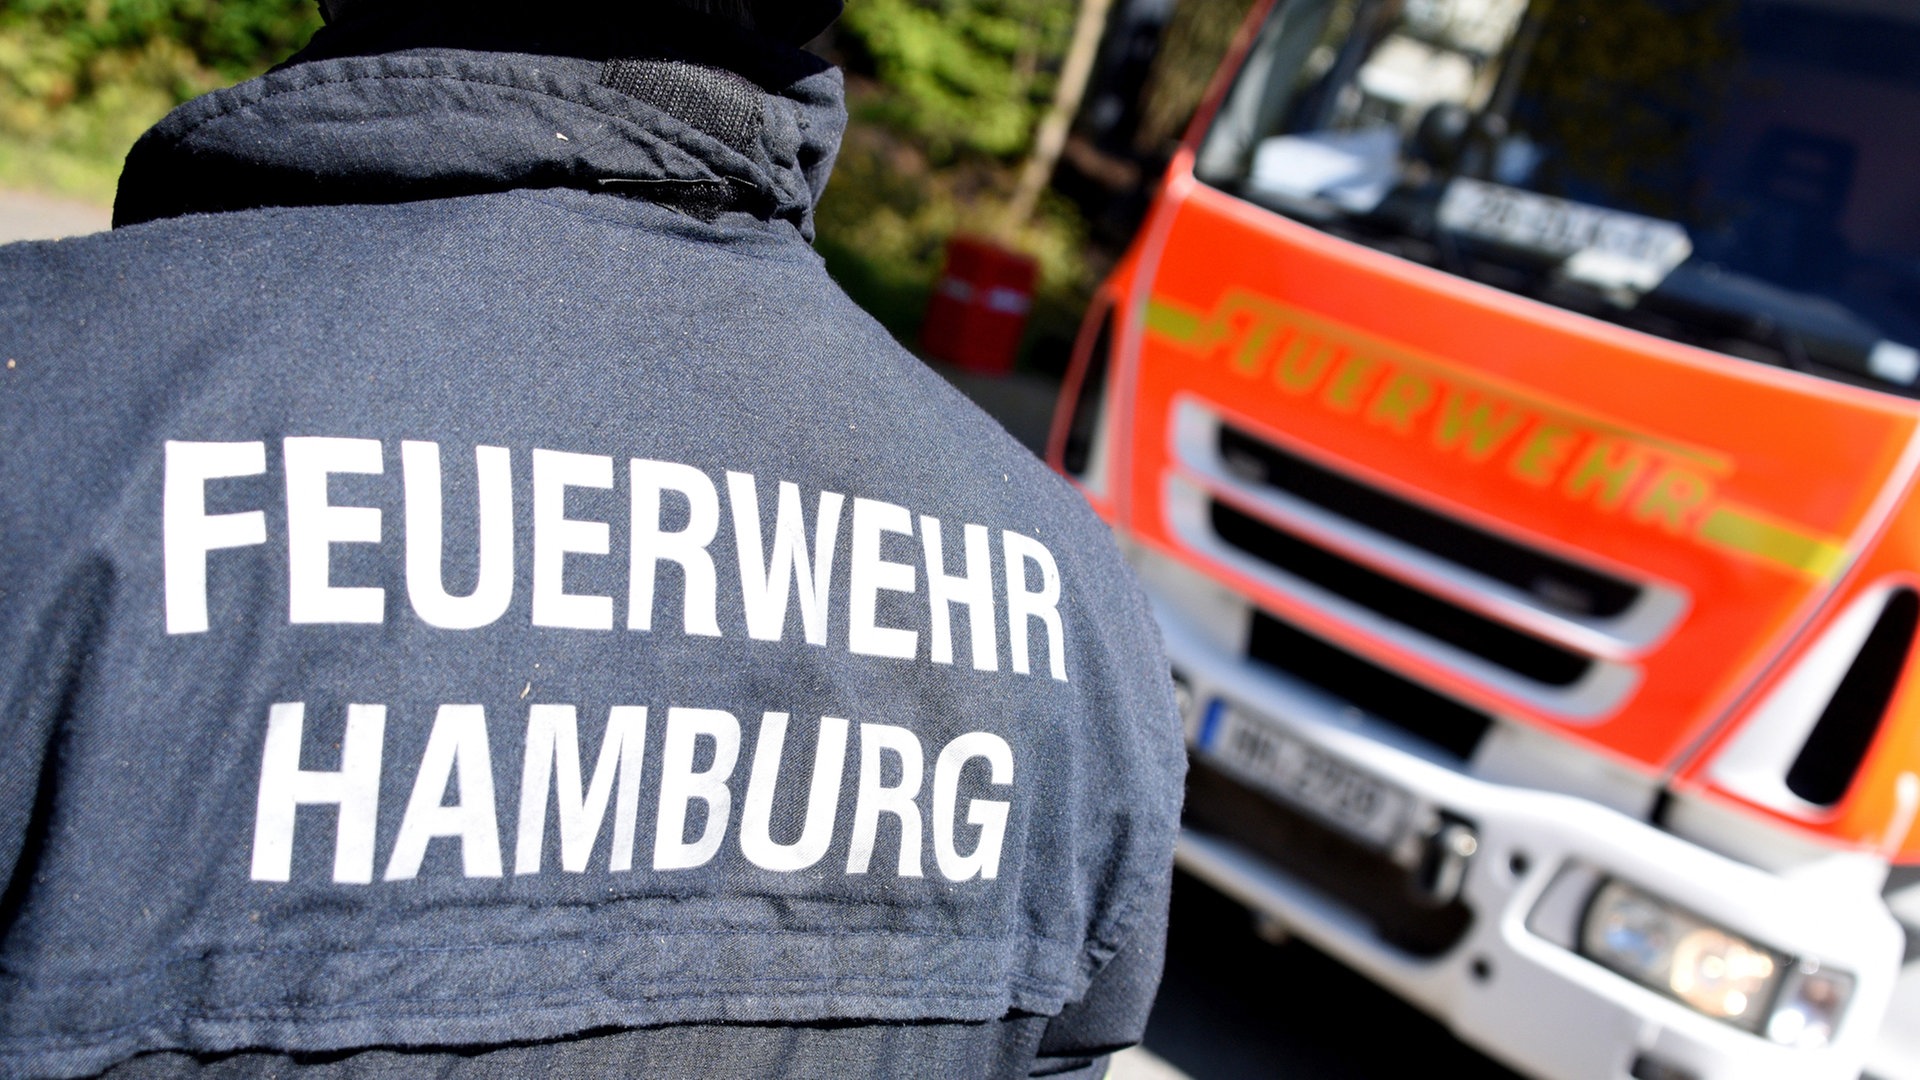 Jahresbilanz: Mehr als 300.000 Einsätze für Hamburgs Feuerwehr